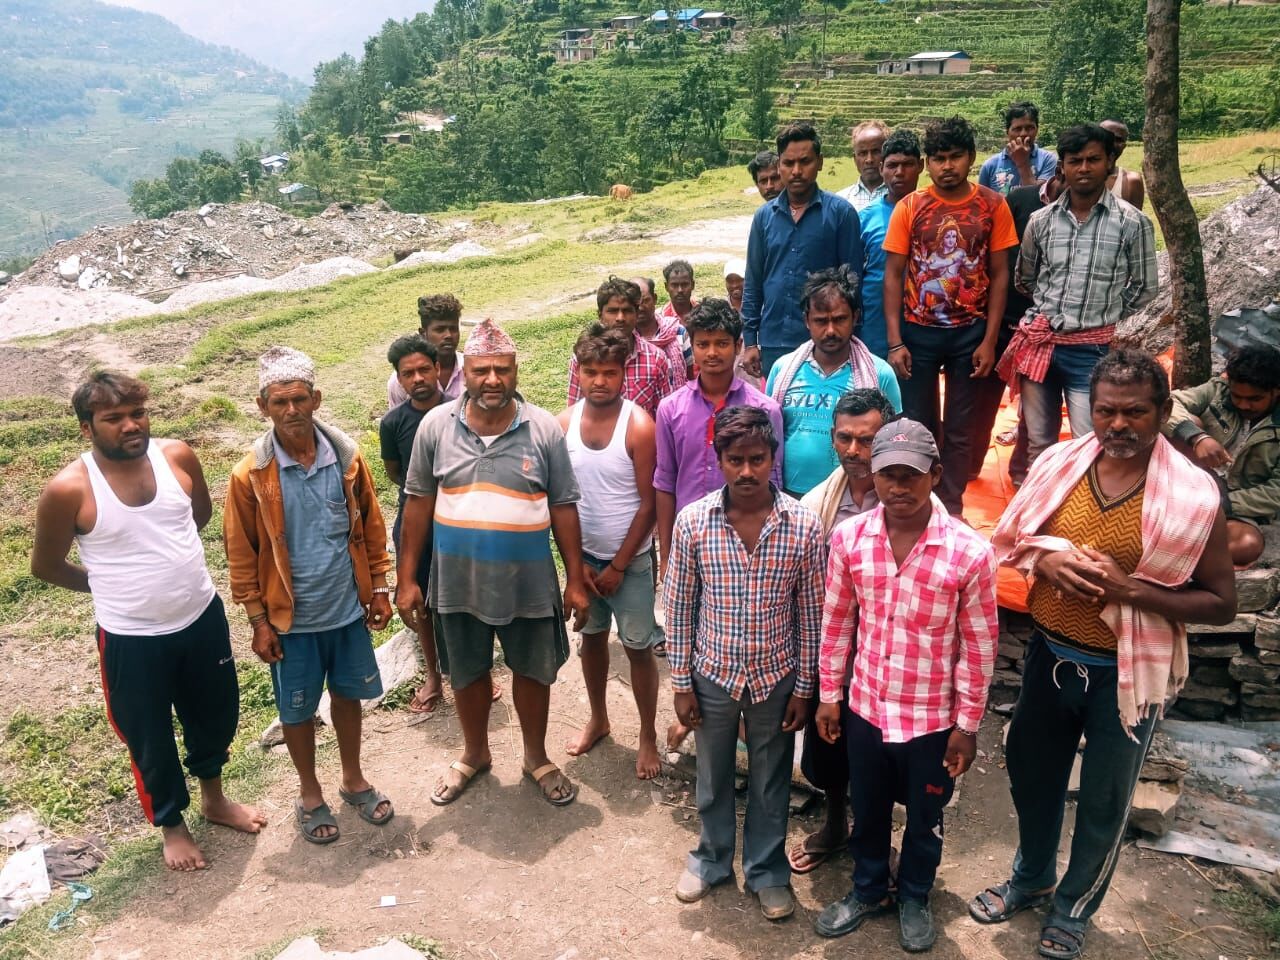 नेपाल में फंसे झारखंड के 50 मजदूर दो महीने से कर रहे हैं मिन्नतें, केंद्र व राज्य के बीच उलझा है घर वापसी का मामला